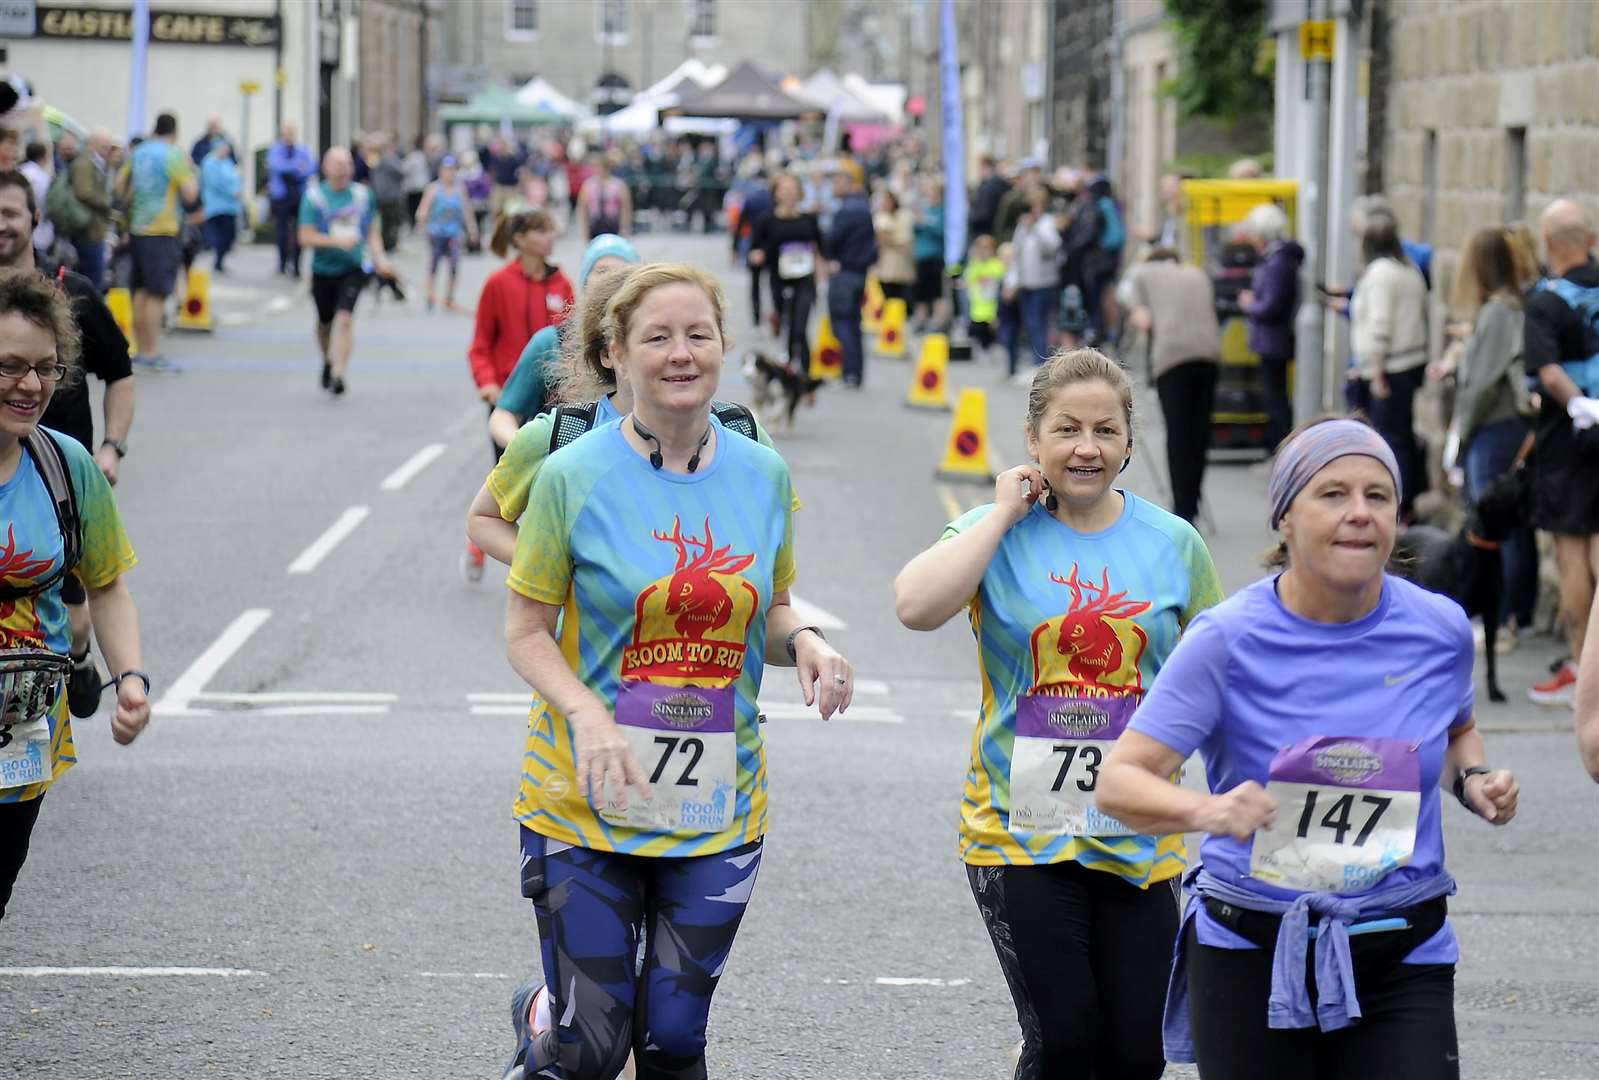 Judi Forsyth, Lisa Forsyth and Jan McNeillie at the start of the half marathon.